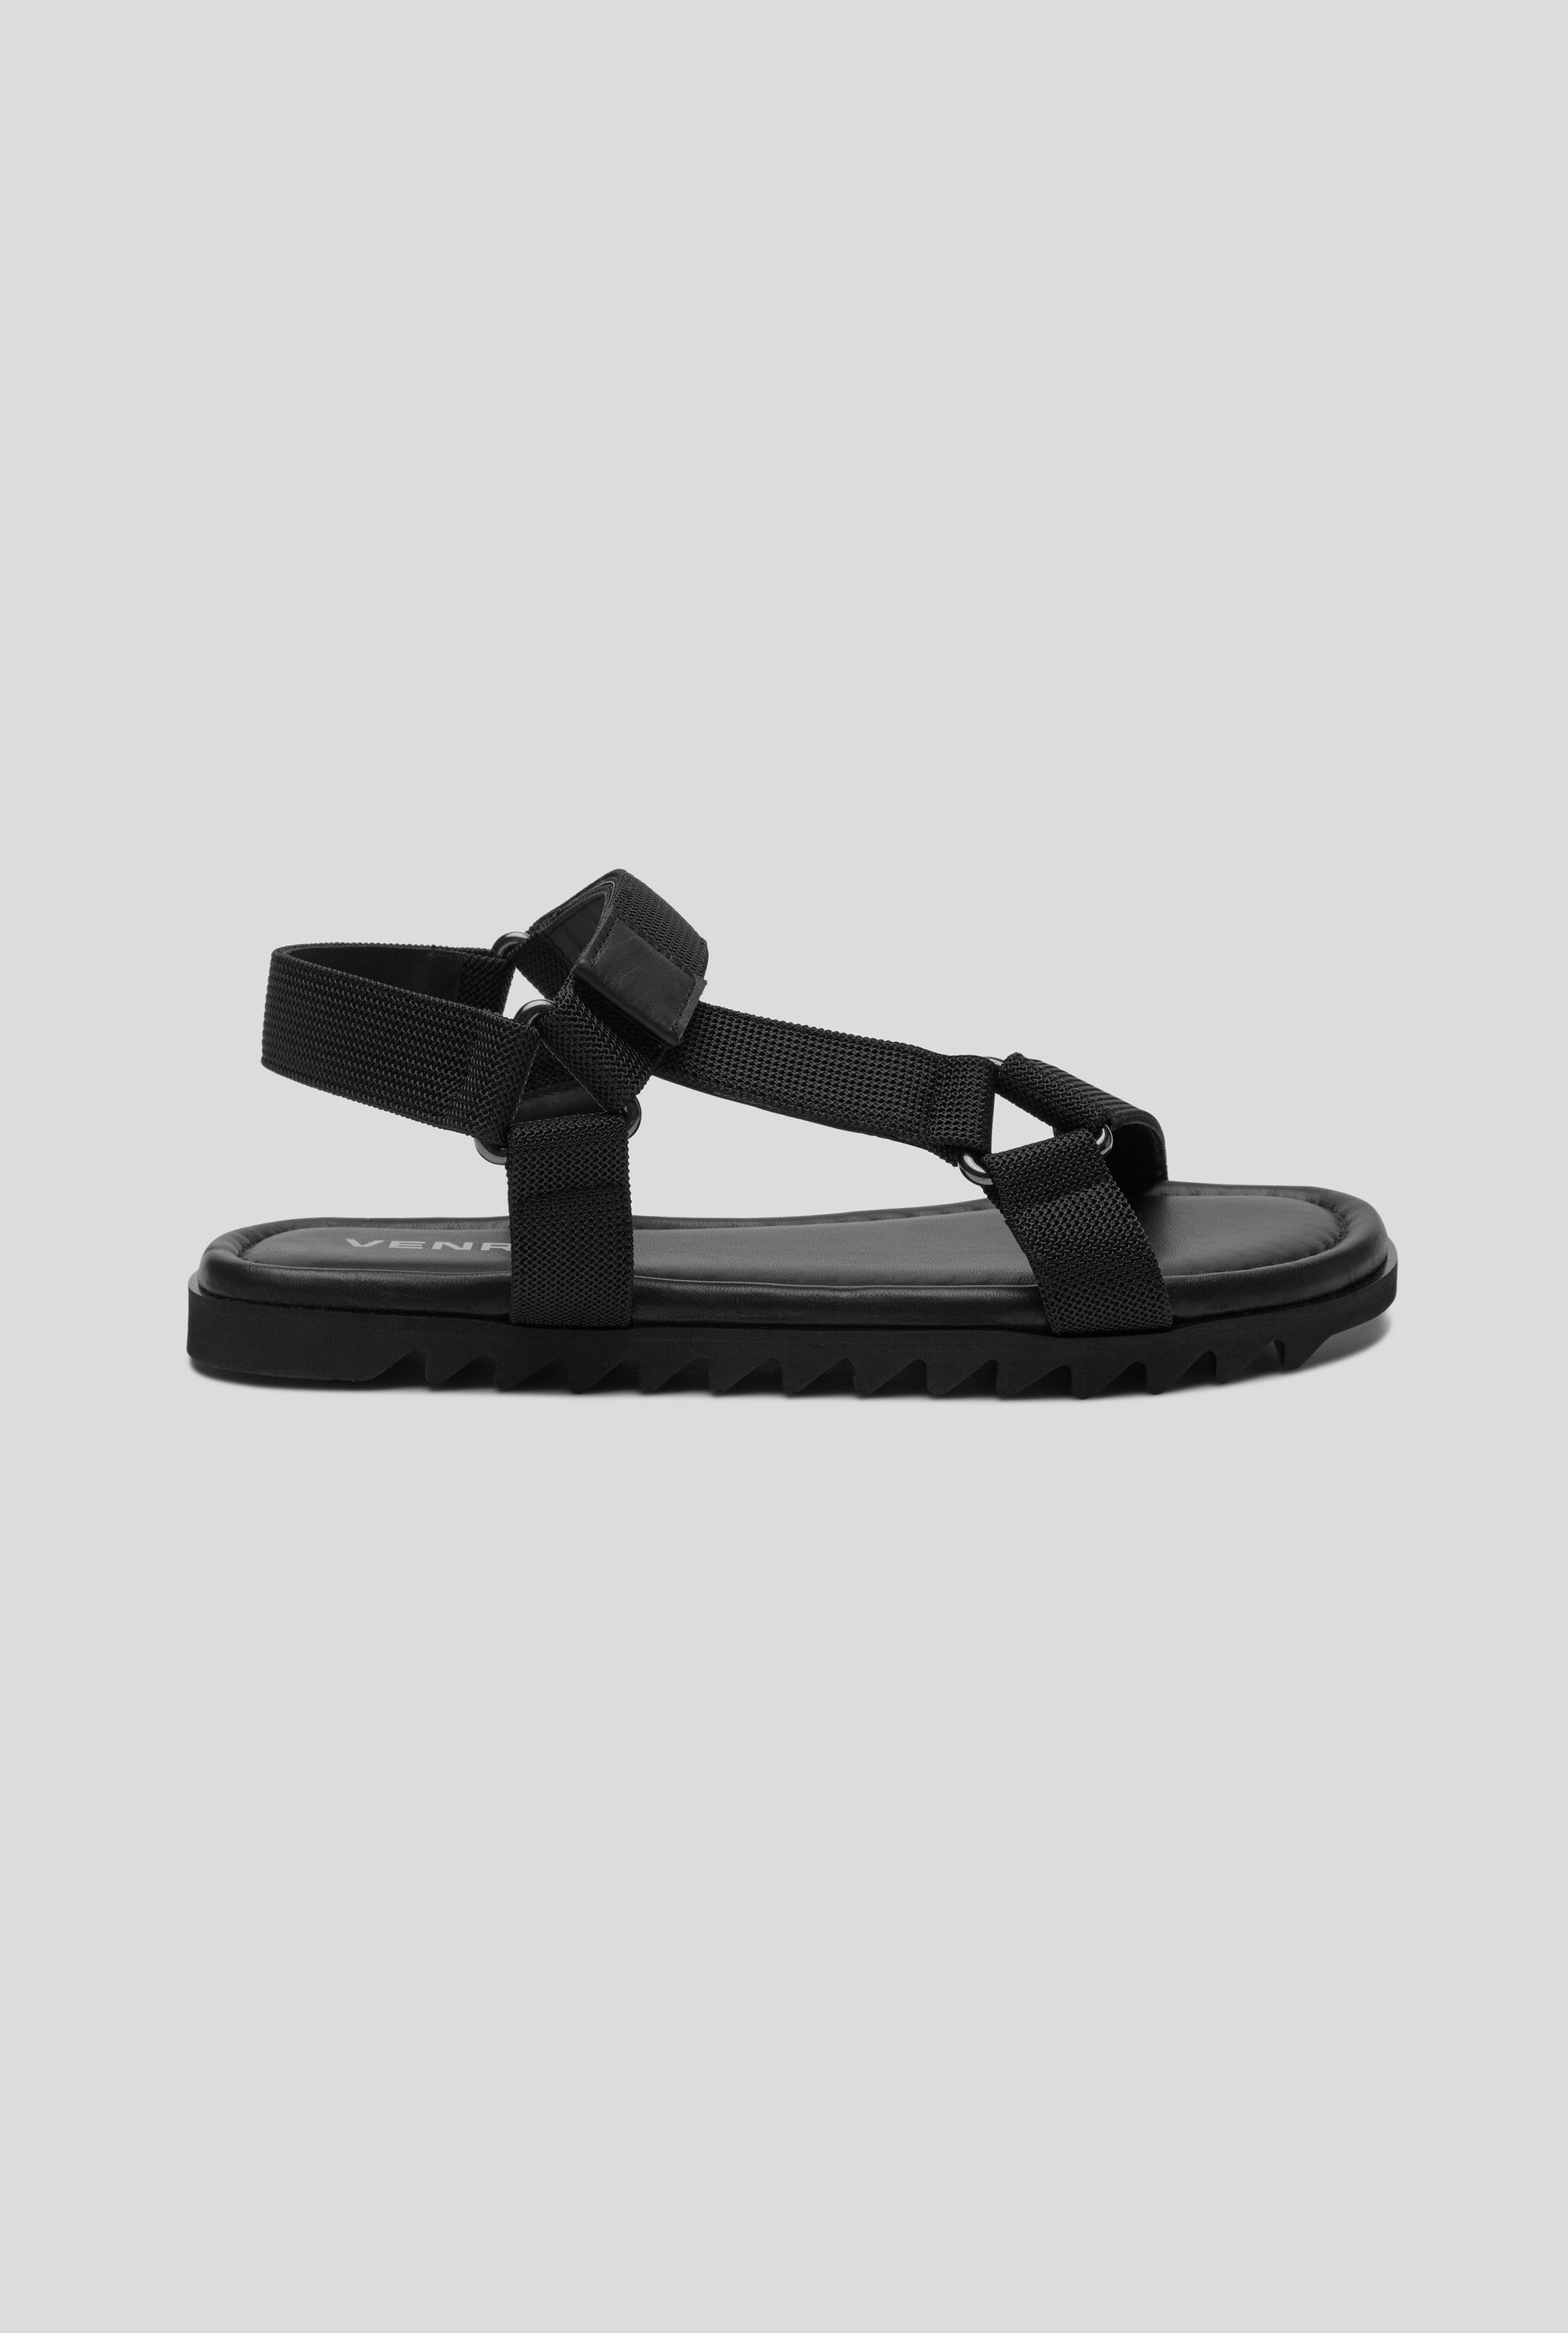 Venroy - Mens Trek Sandal in Black | Venroy | Premium Leisurewear ...